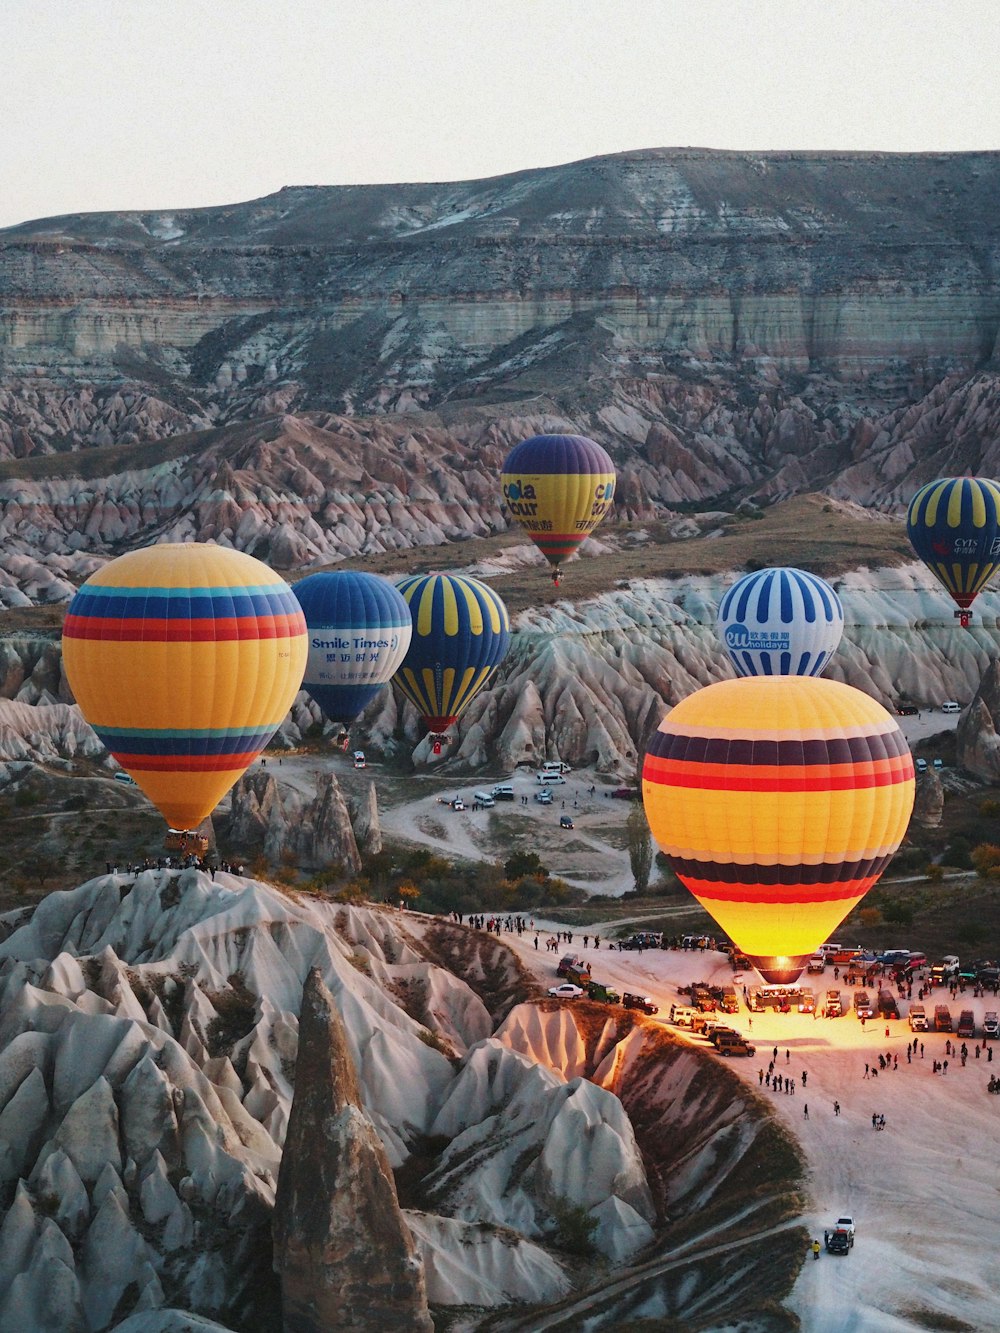 Un grupo de globos aerostáticos volando sobre un valle